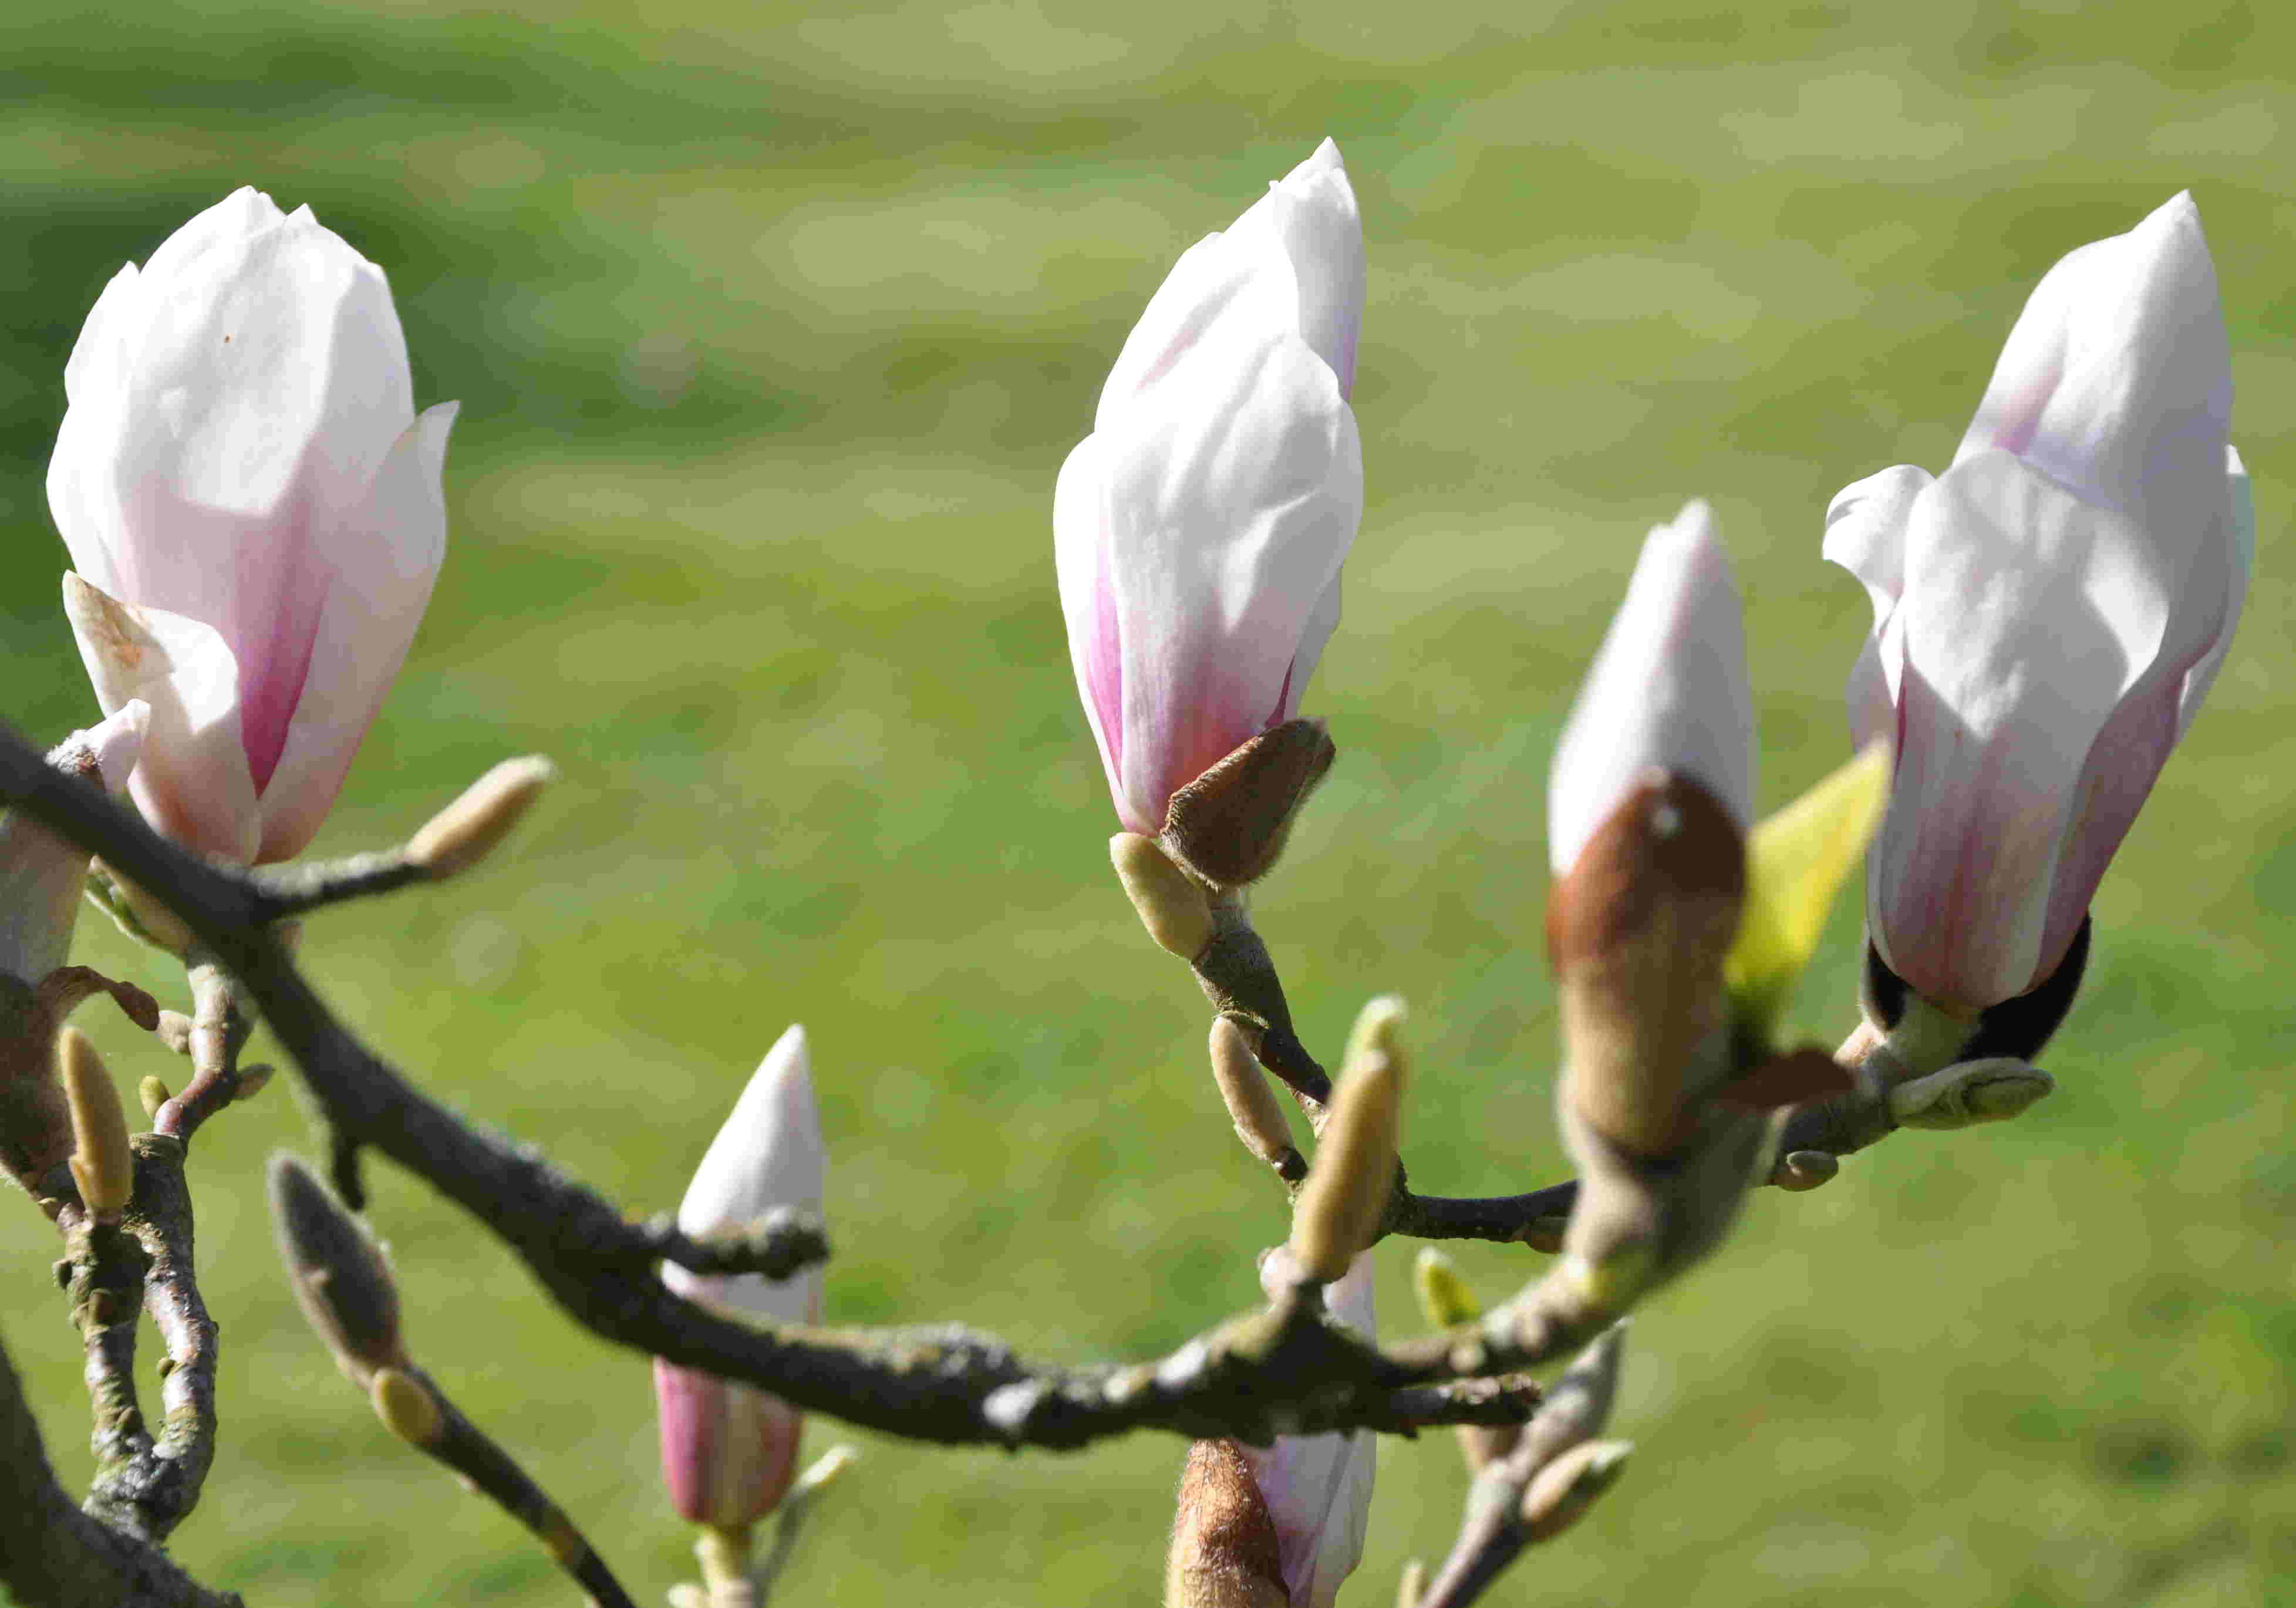 Mgnoliorna har stora knoppar och breda blommor som utslagna.